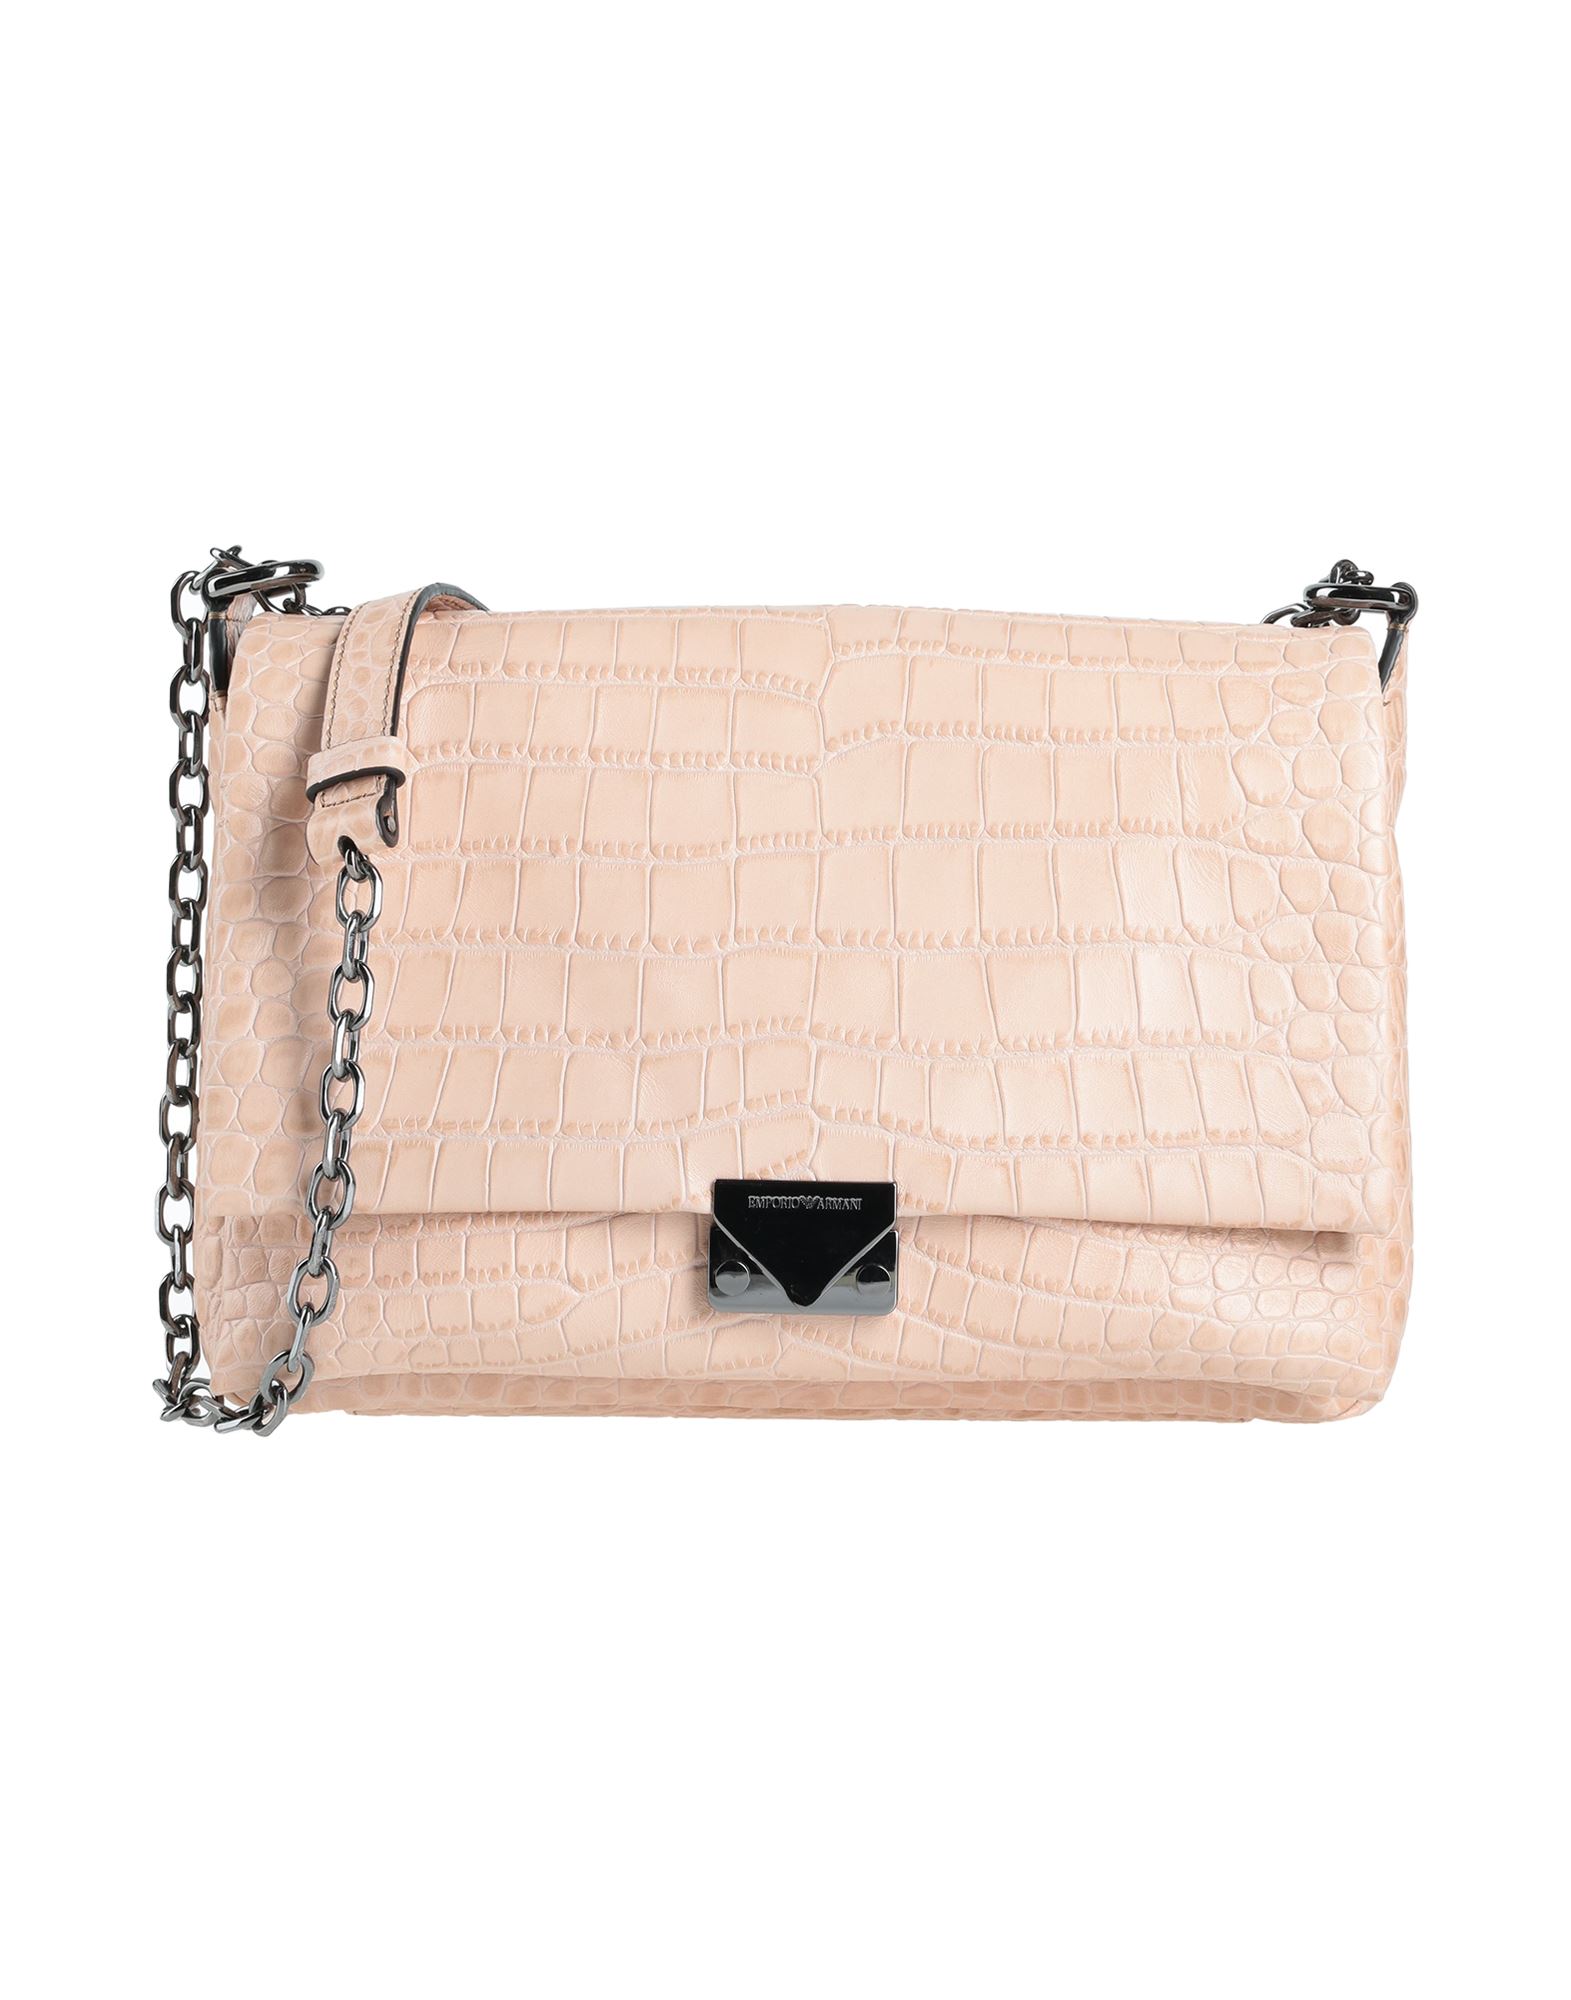 Emporio Armani Handbags In Pink